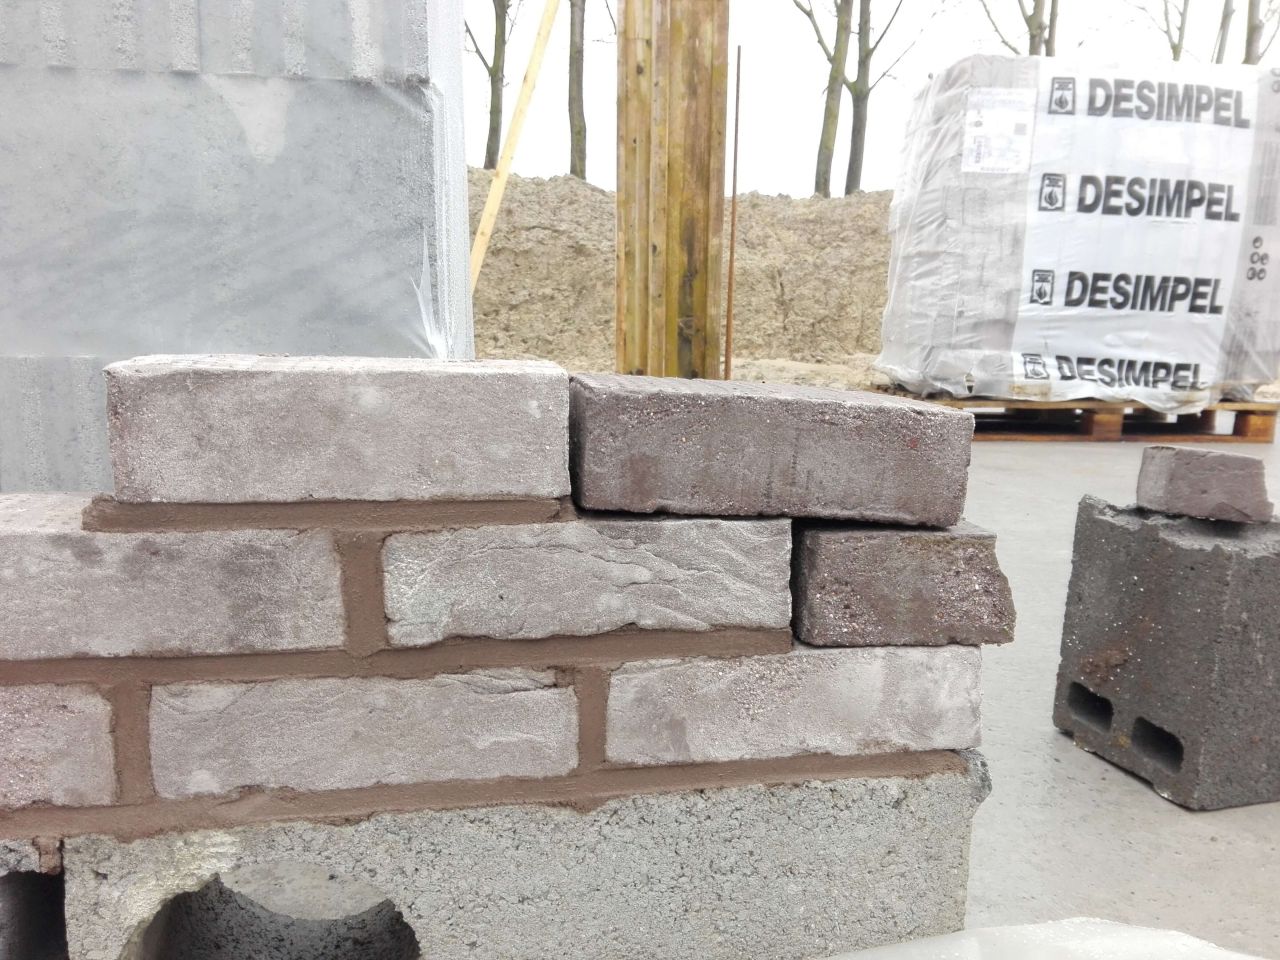 1er test des joints de brique pour l'lvation des murs pas concluant. On espre pouvoir en refaire un trs vite dans les tons gris pour ne pas perdre plus de temps dans l'avance du chantier.